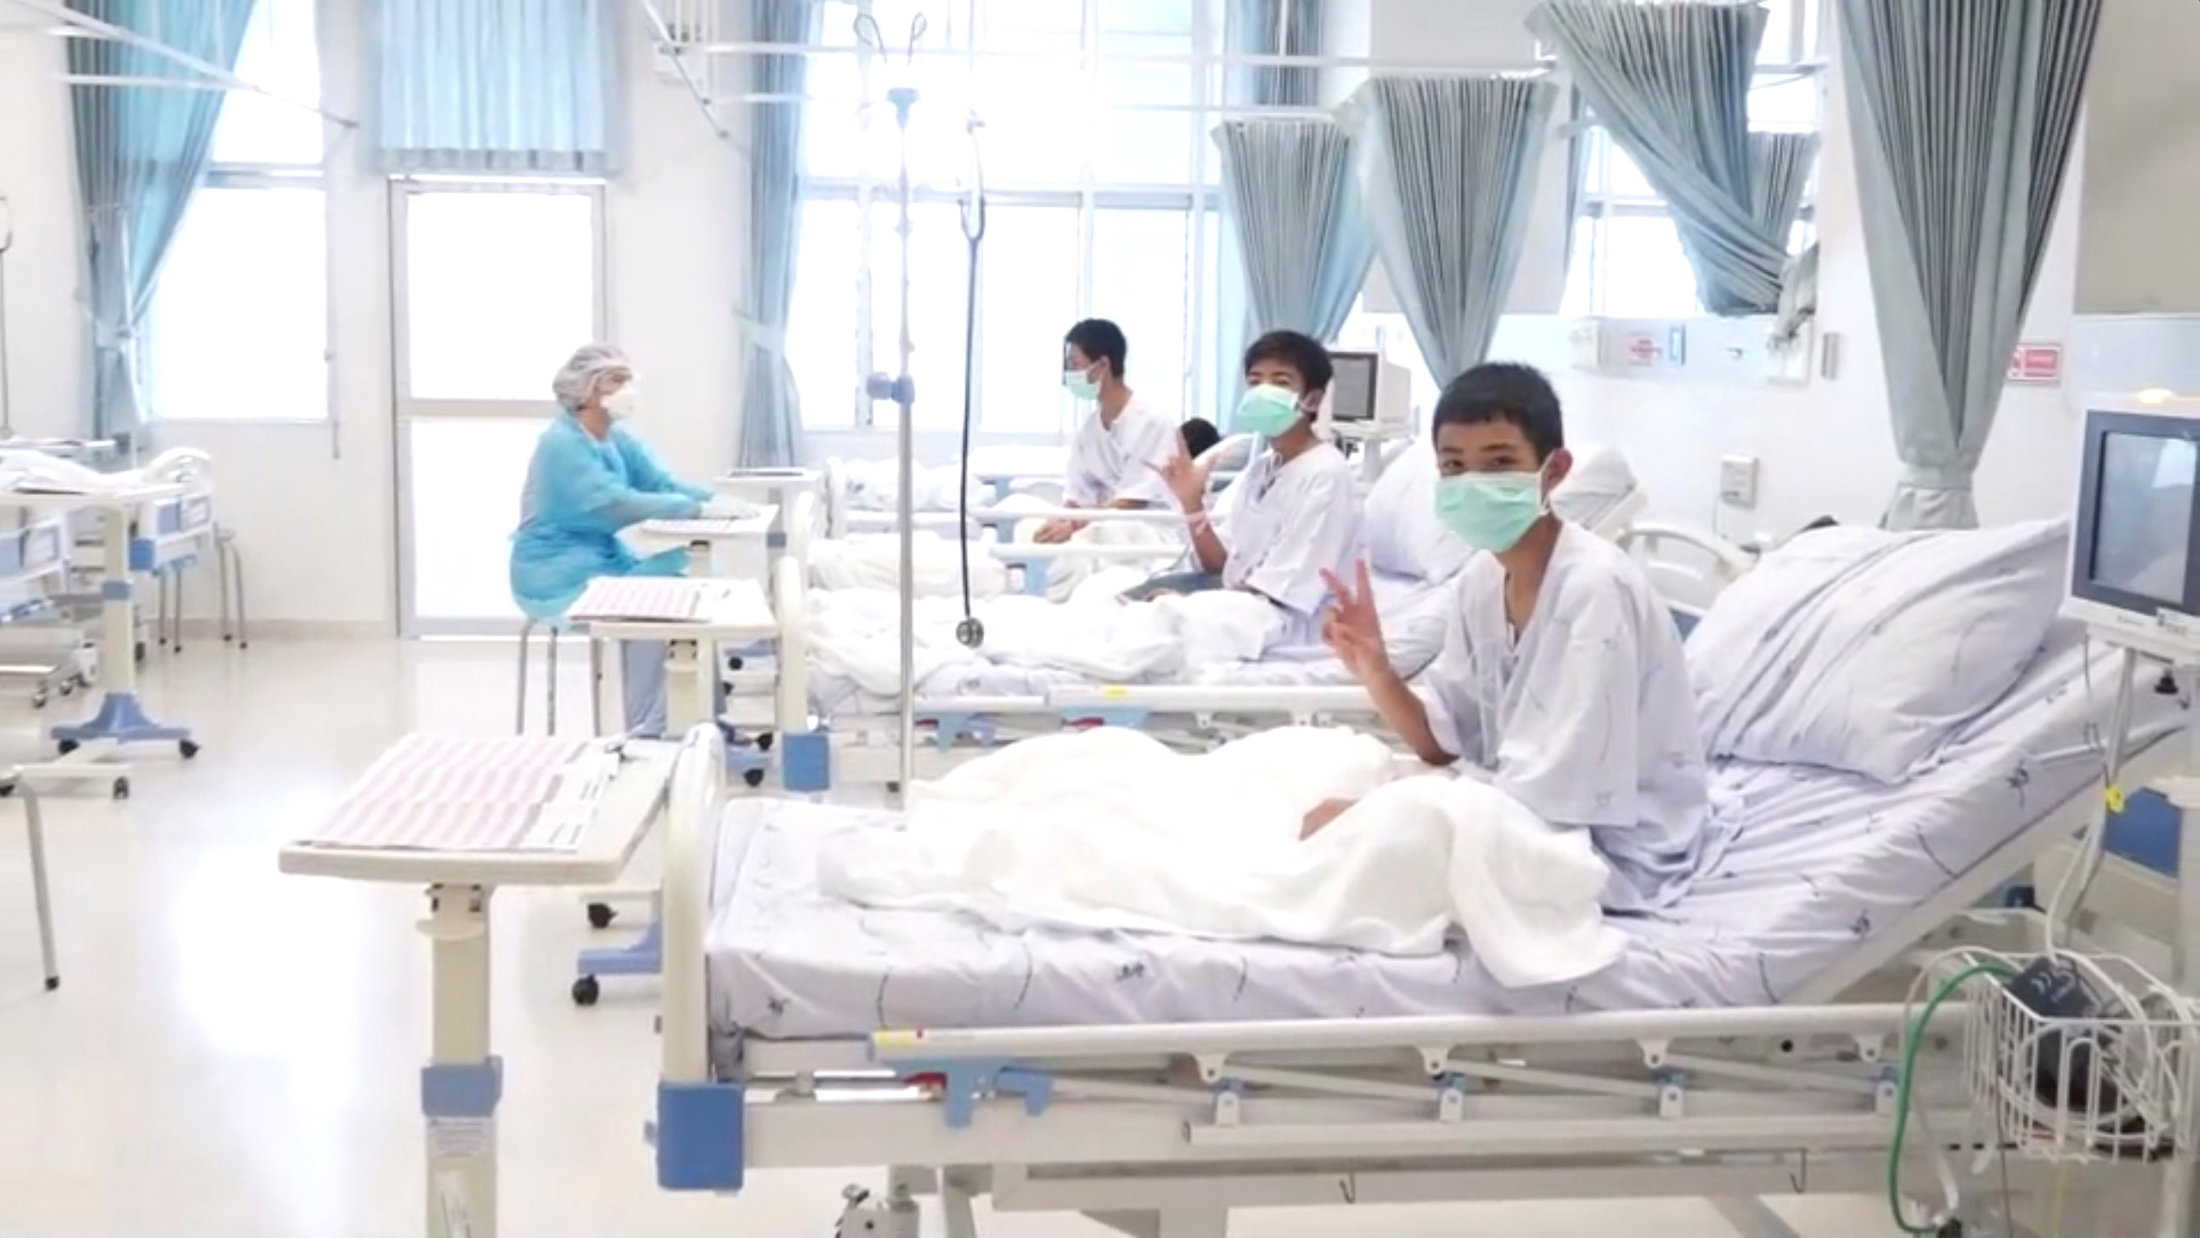 فتية الكهف في مستشفى شيانج راي. رويترز